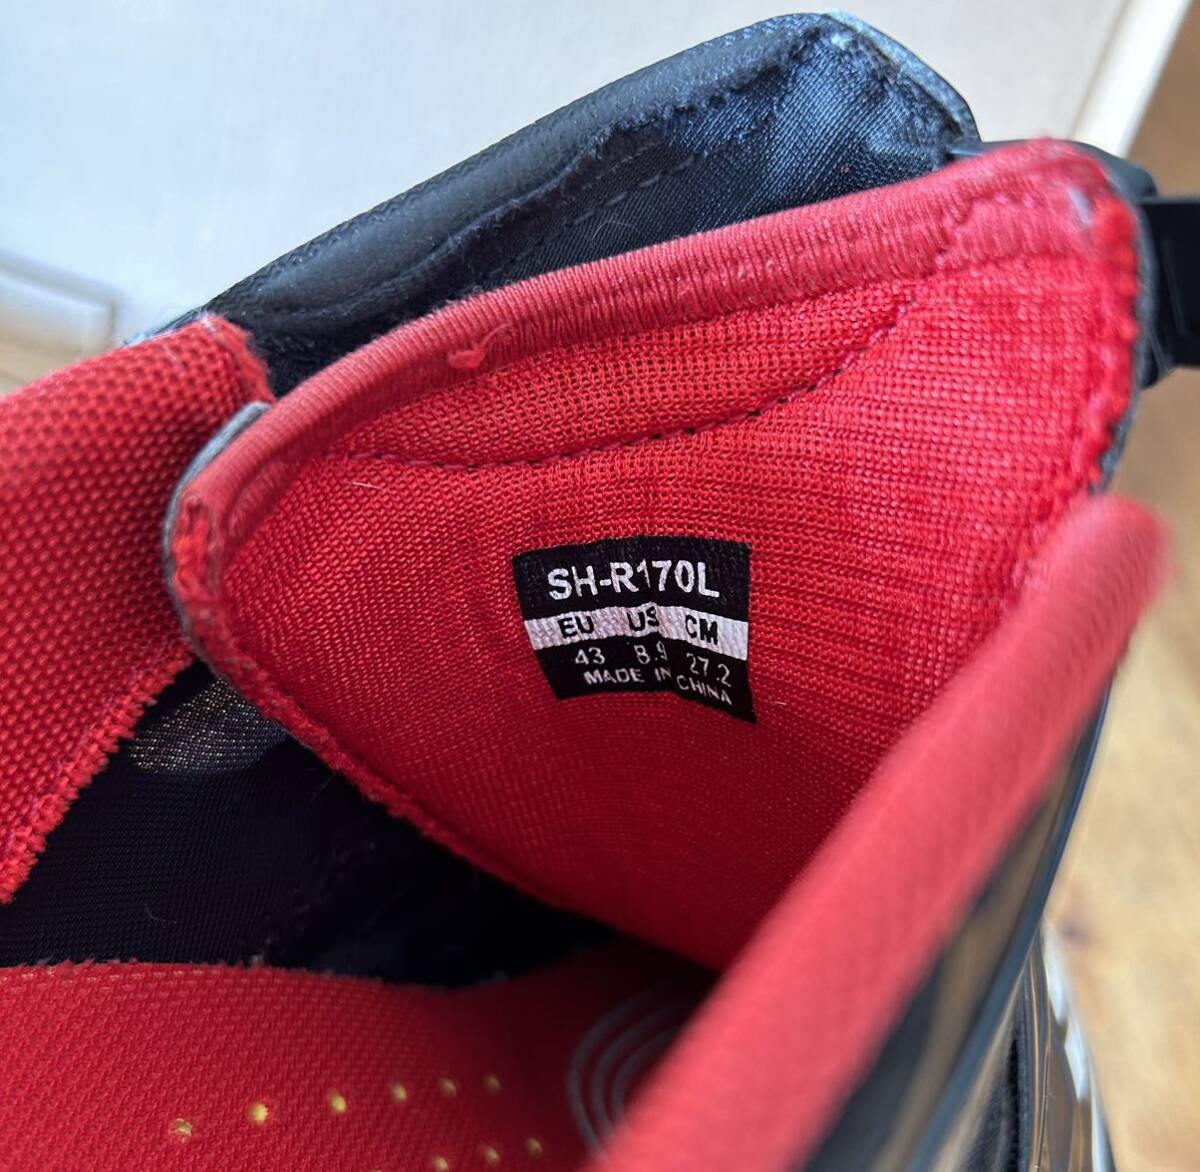  Shimano binding shoes SH-R170 27.2cm